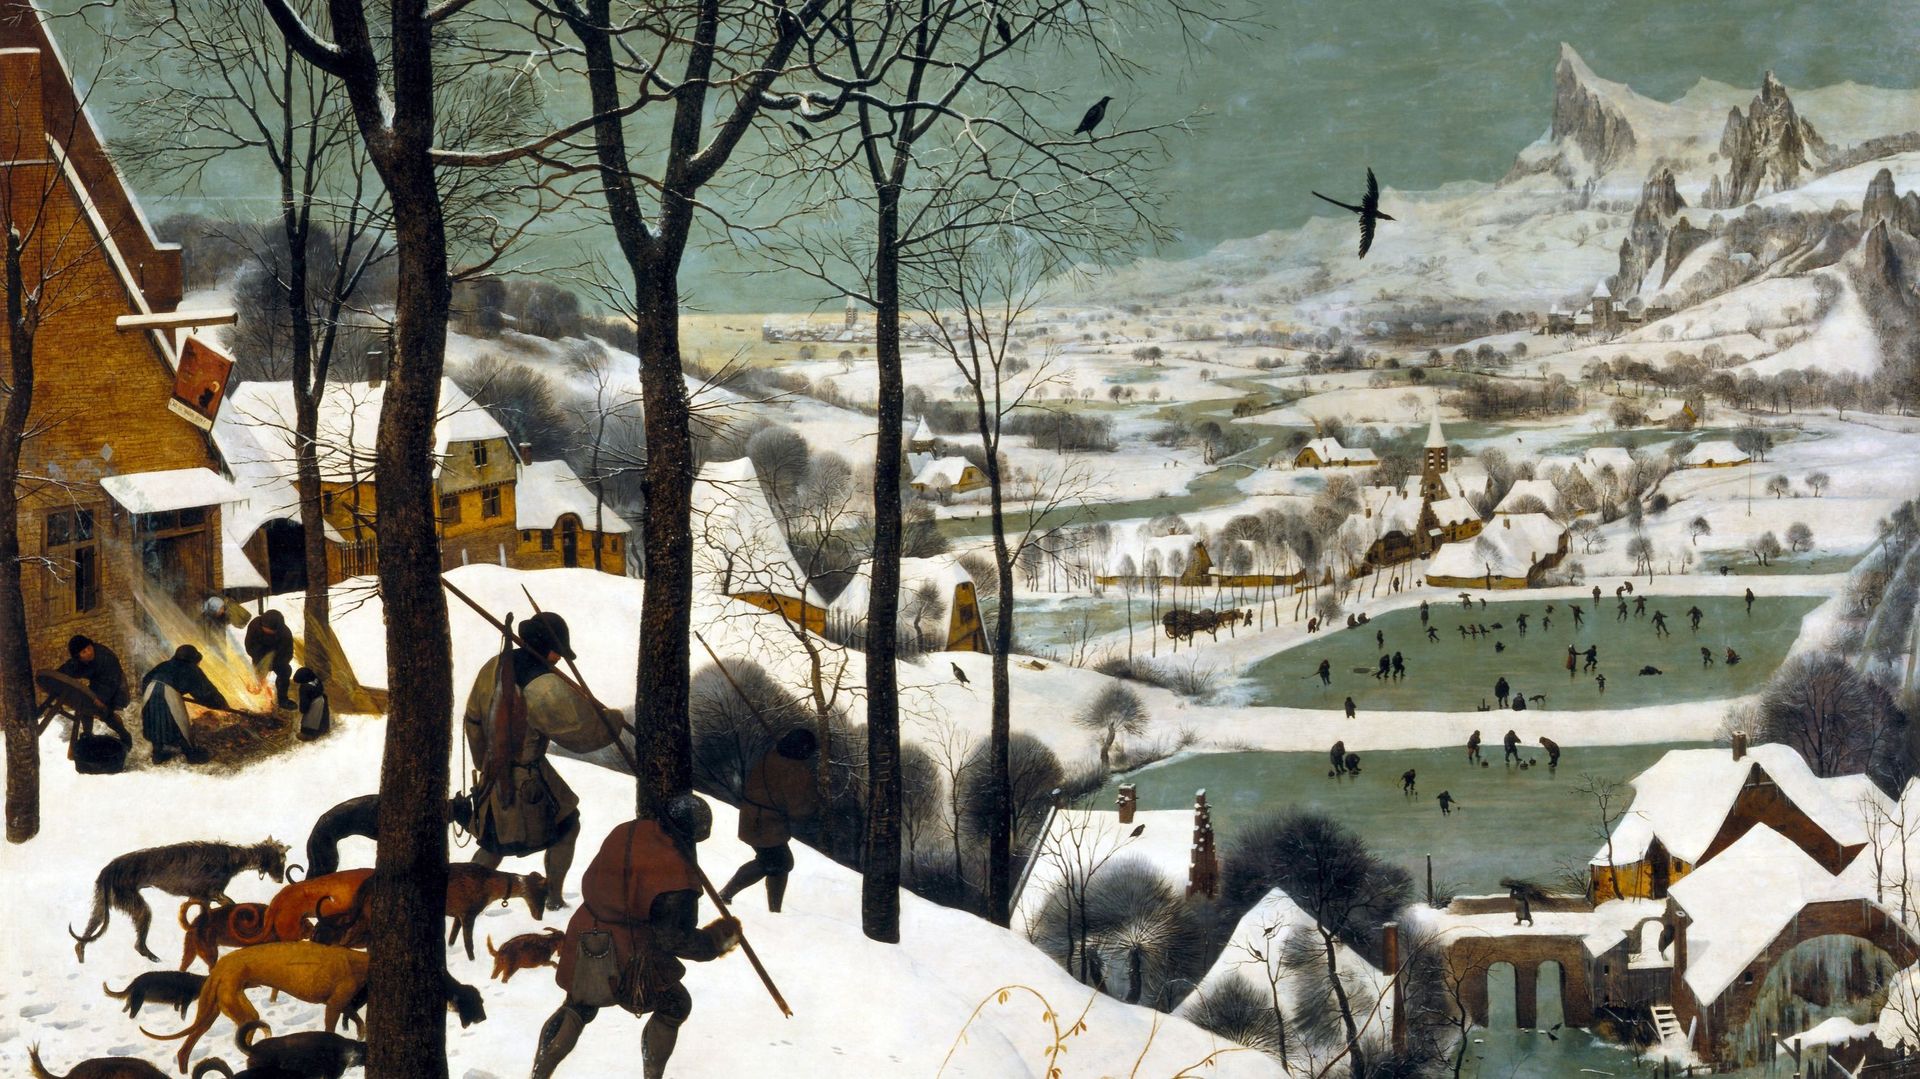 Les chasseurs dans la neige, de Pieter Brueghel l’Ancien, conservé au Musée d’Histoire de l’art de Vienne